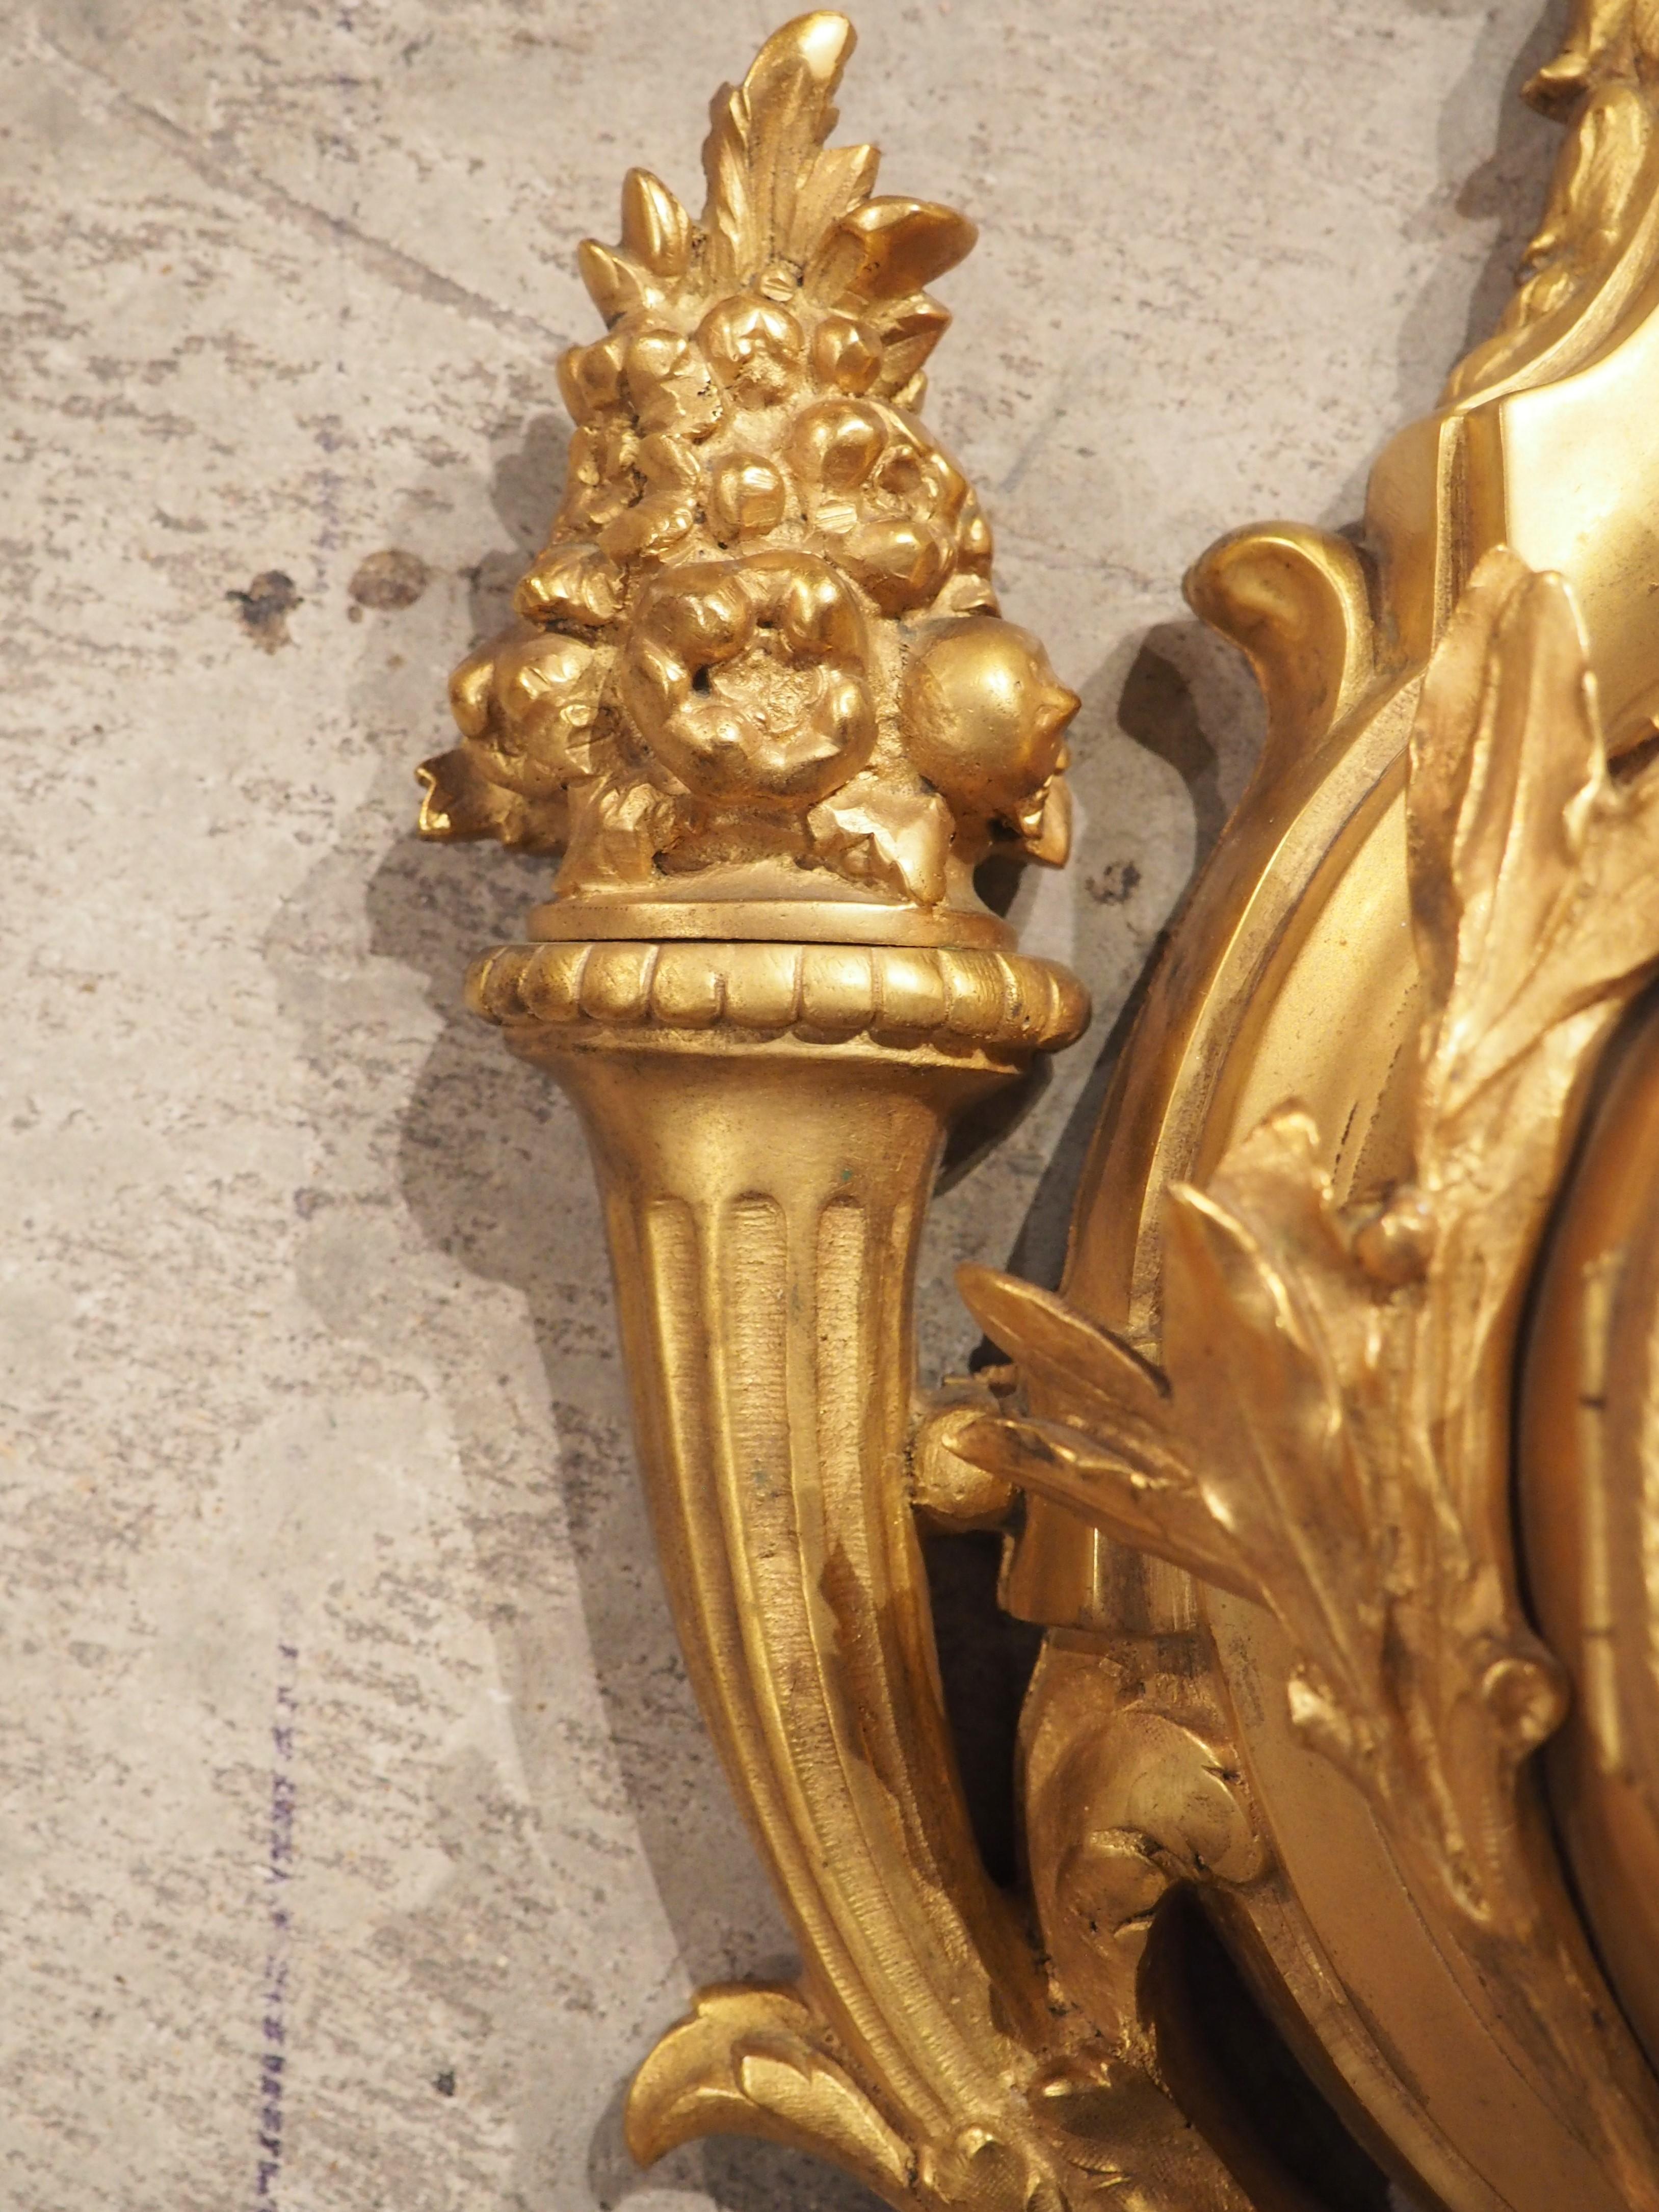 Diese hochwertige Wanduhr aus vergoldeter Bronze wurde um 1800 in Frankreich hergestellt und weist Elemente im Stil von Ludwig XVI. auf. Das weiße Ziffernblatt mit blauen Ziffern ruht auf einer erhöhten Plattform, die von Olivenblättern umgeben ist.